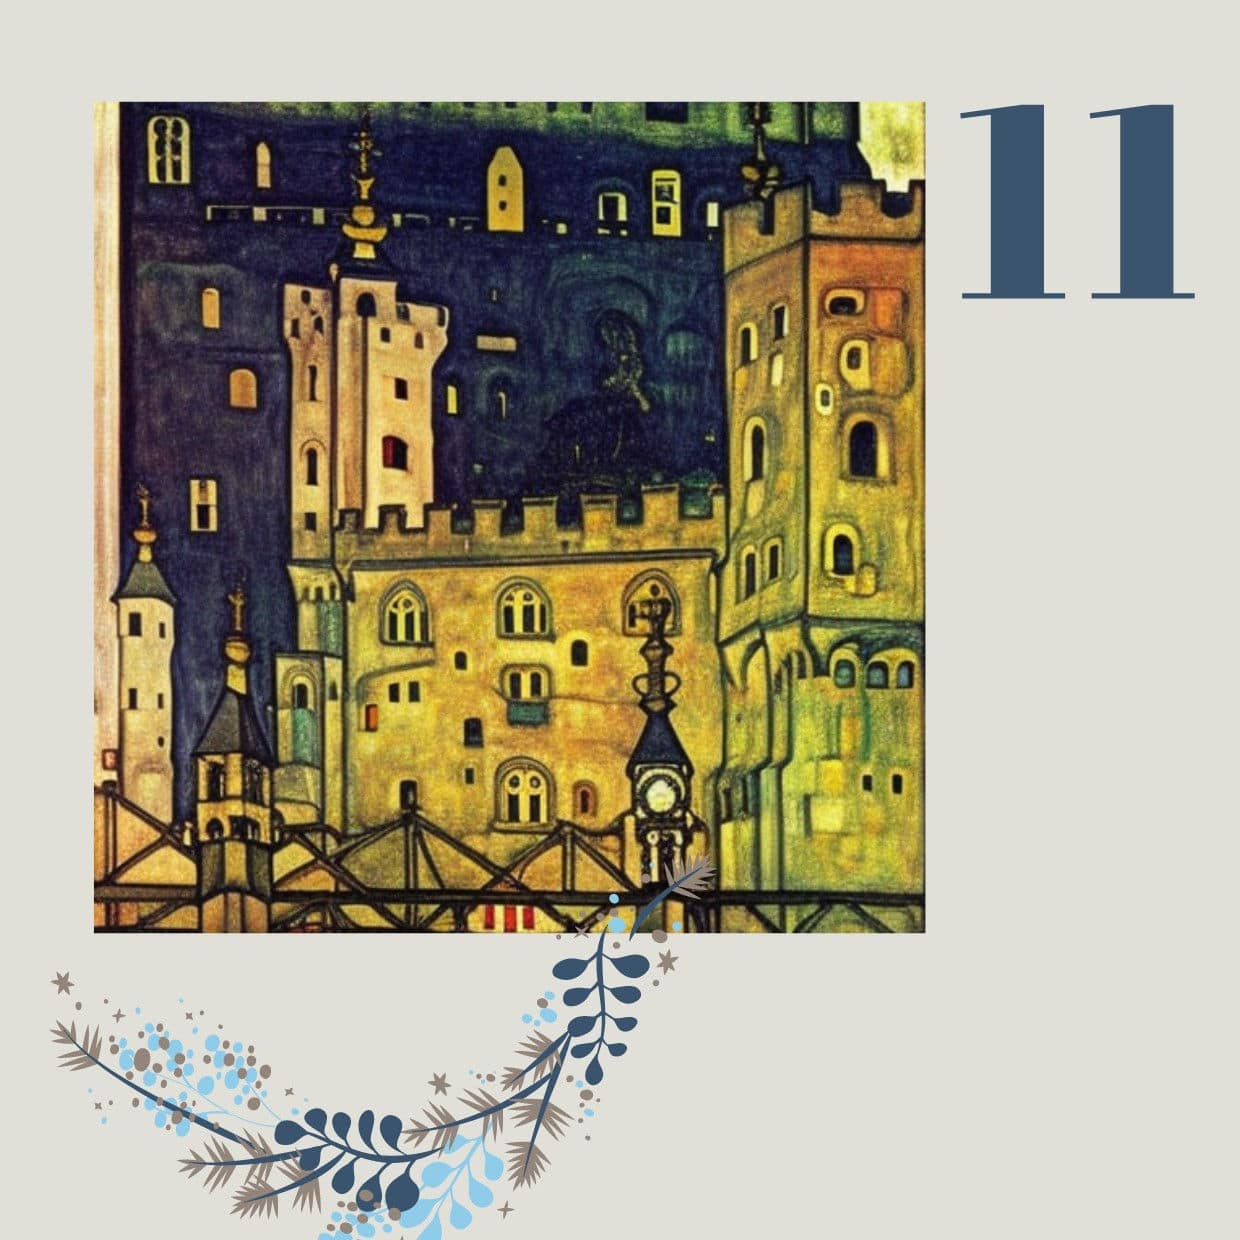 Der Tower of London im Stil von Egon Schiele – dem österreichischen Maler des Expressionismus.